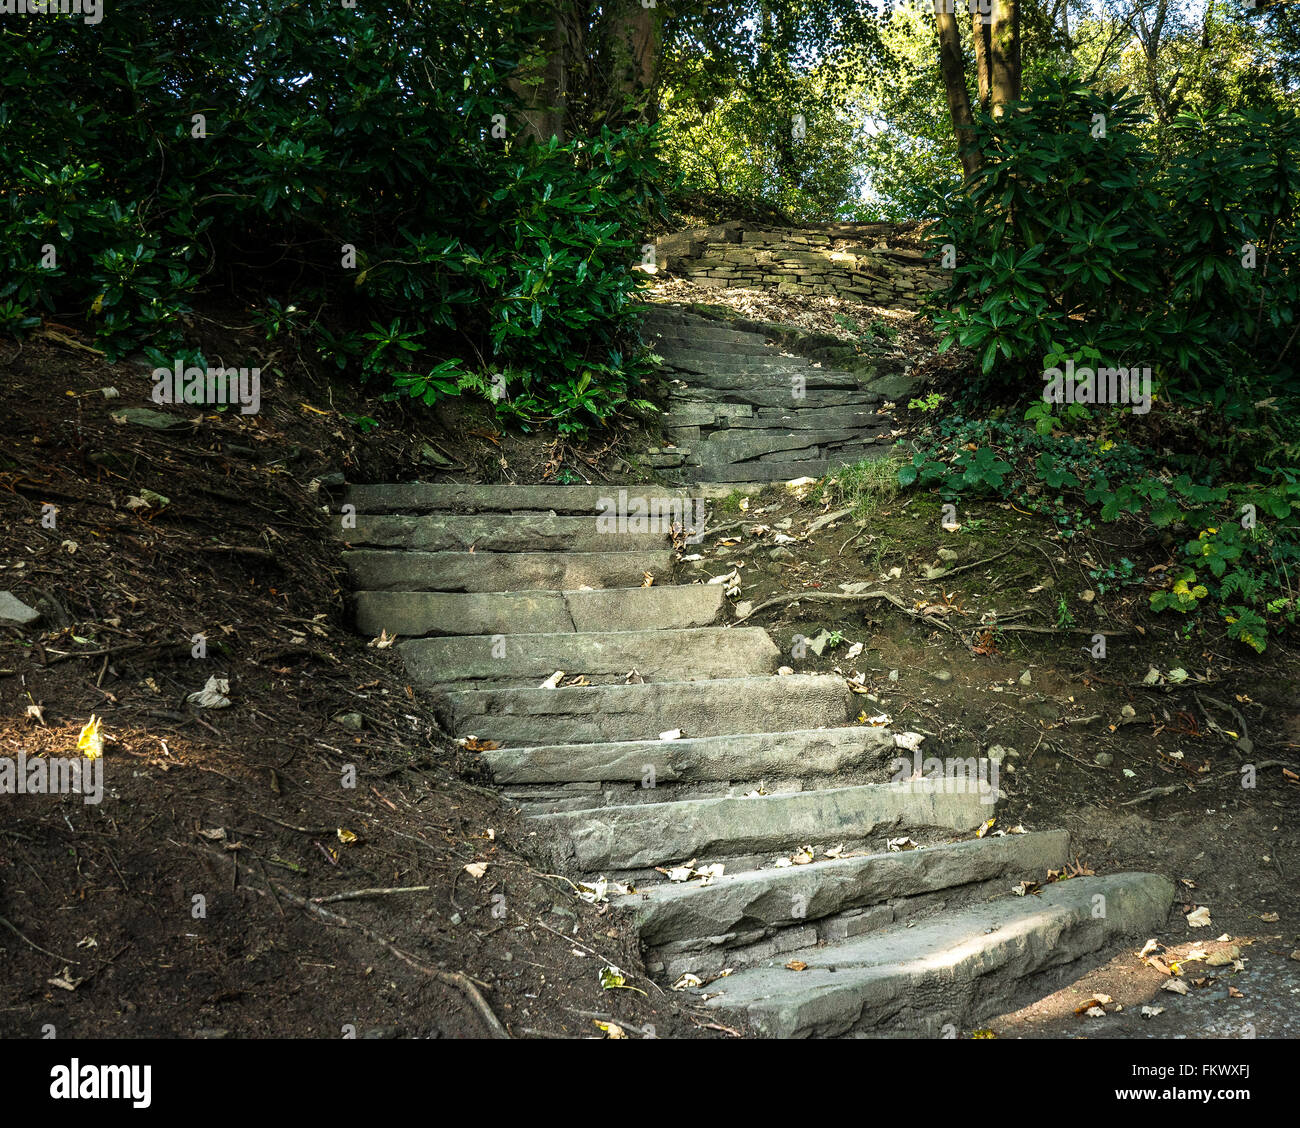 La scalinata in pietra che conduce verso l'alto per sconosciuto, ma all'interno di un bosco di impostazione Foto Stock